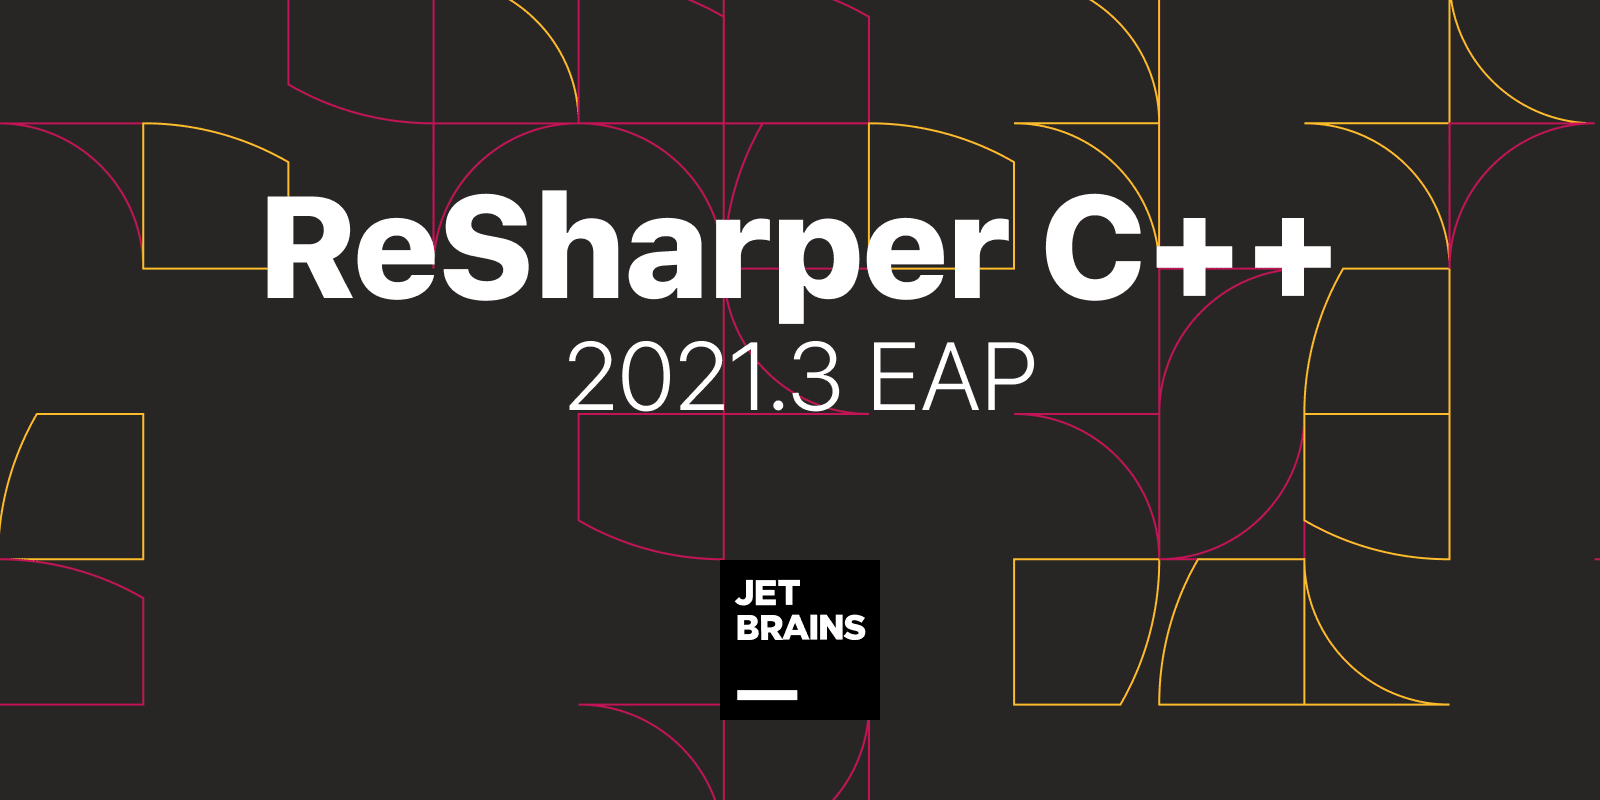 ReSharper C++ 2021.3 EAP